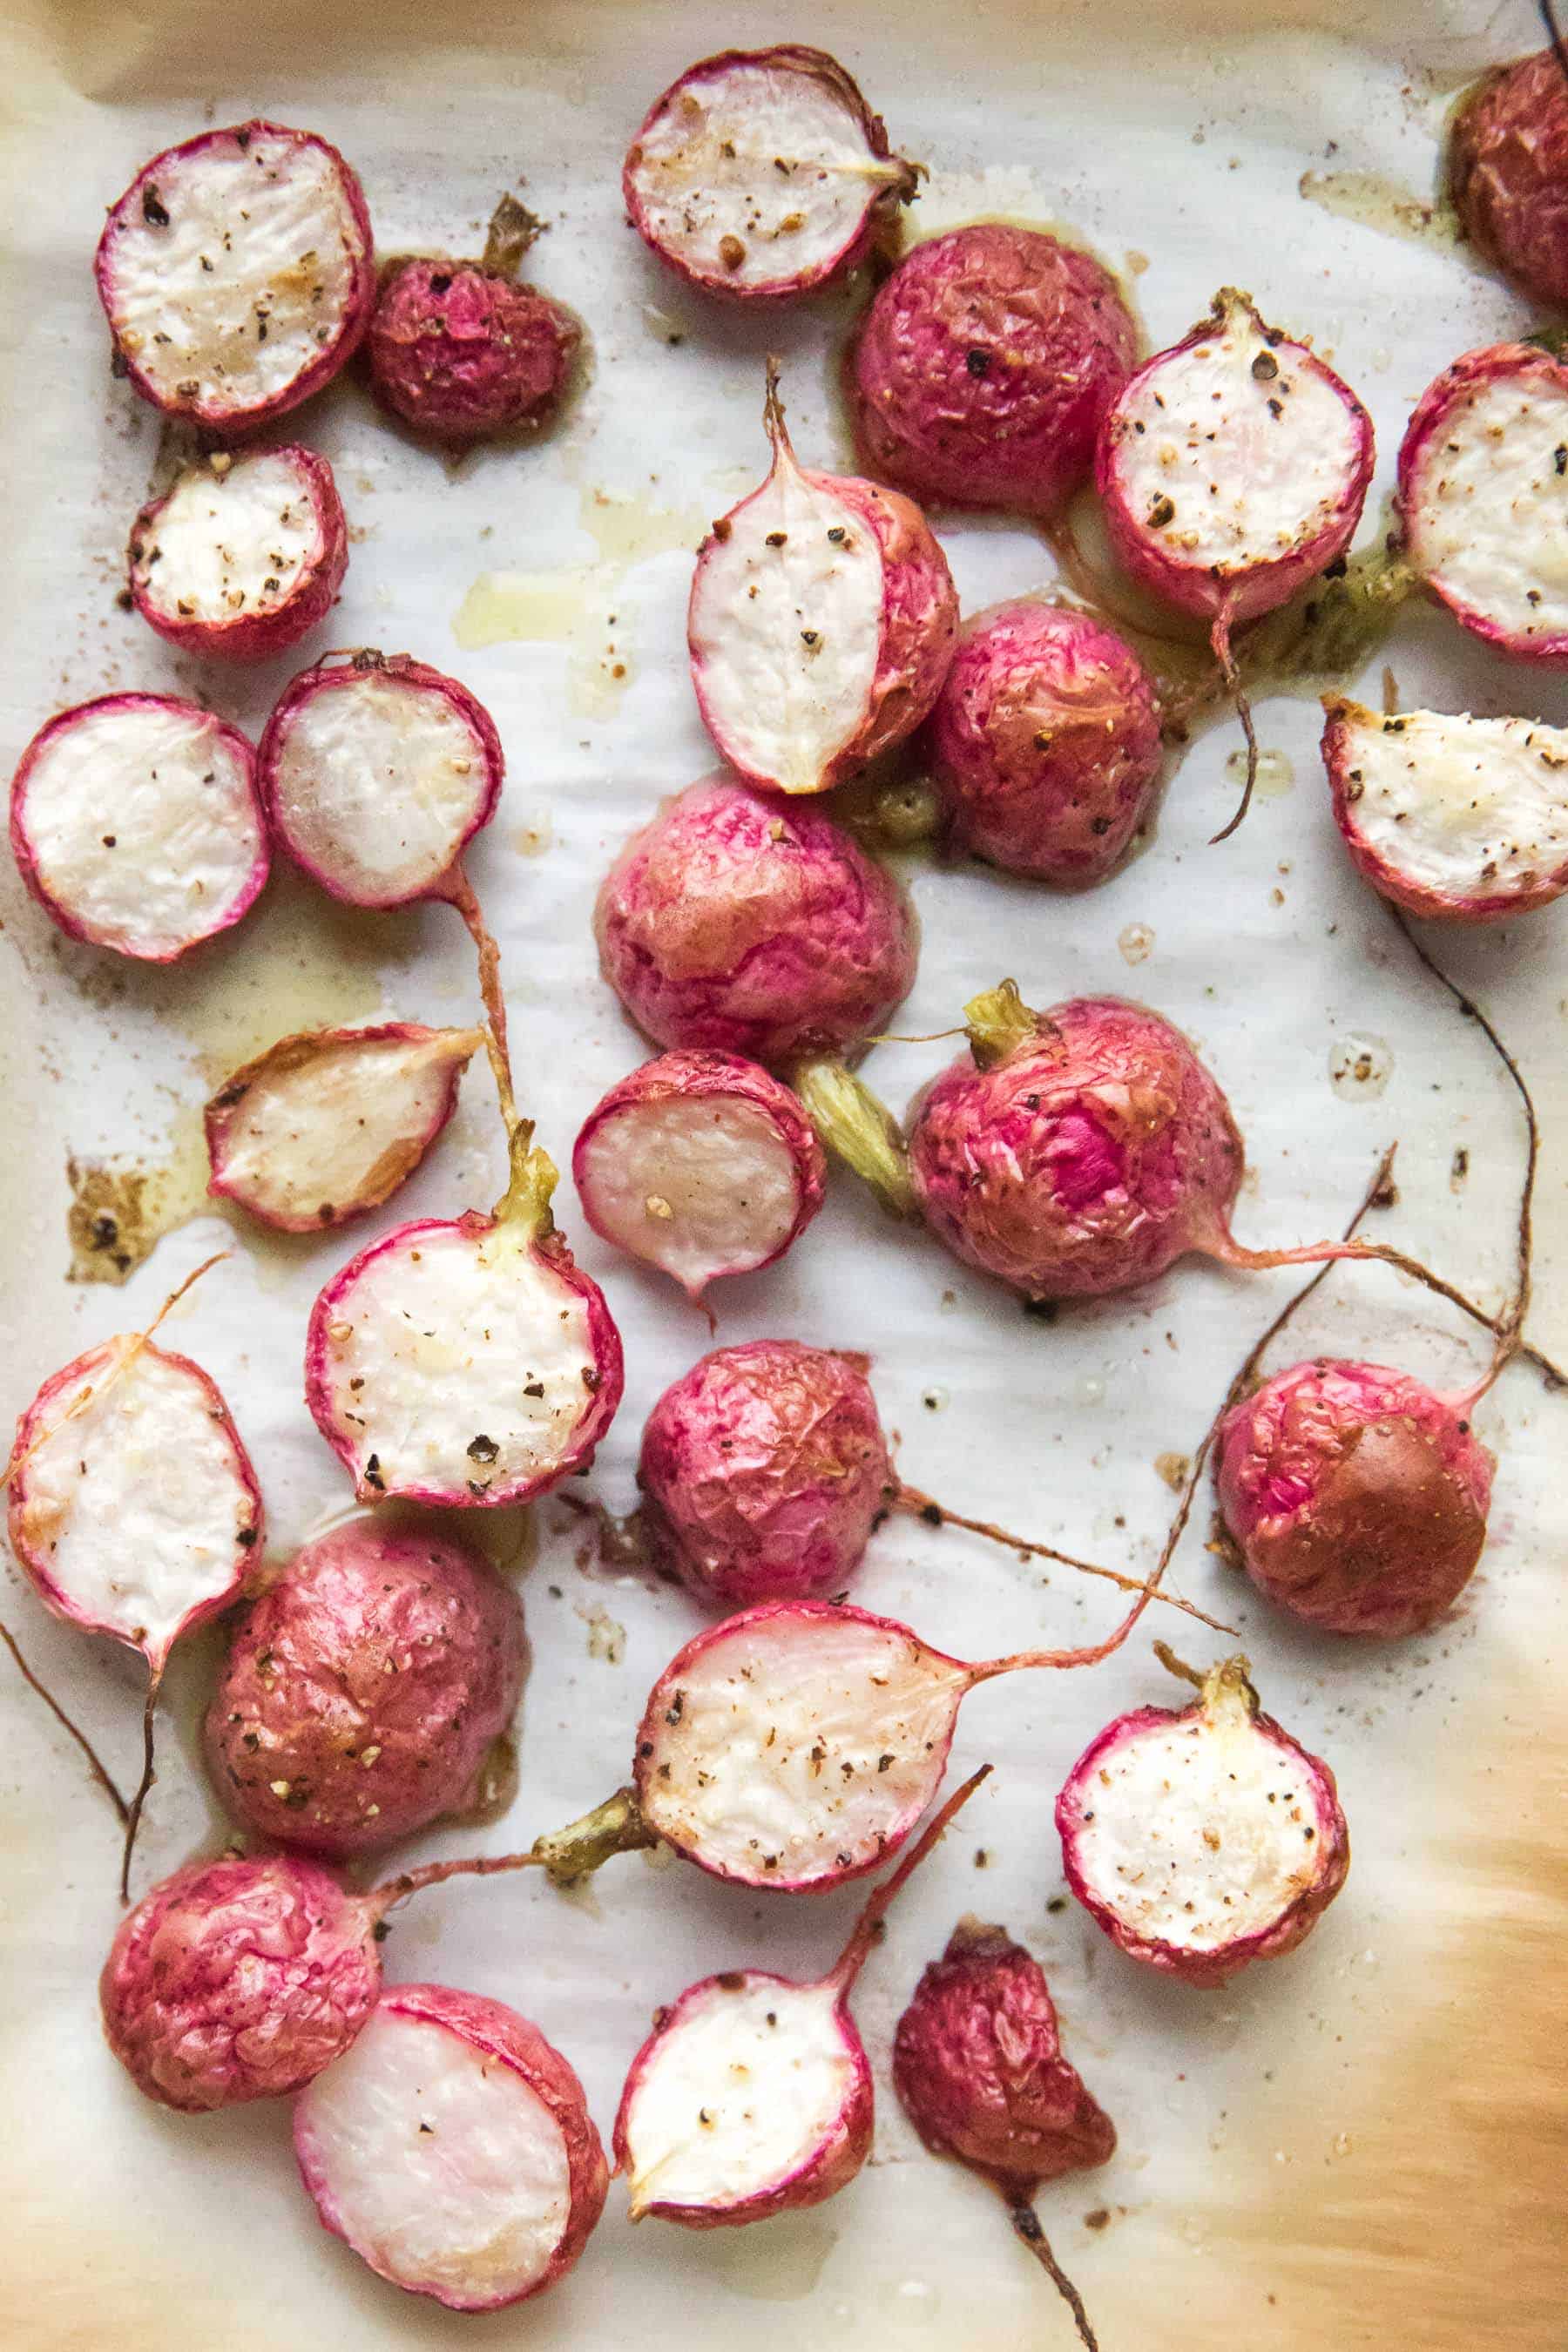 roasted radishes on a baking sheet